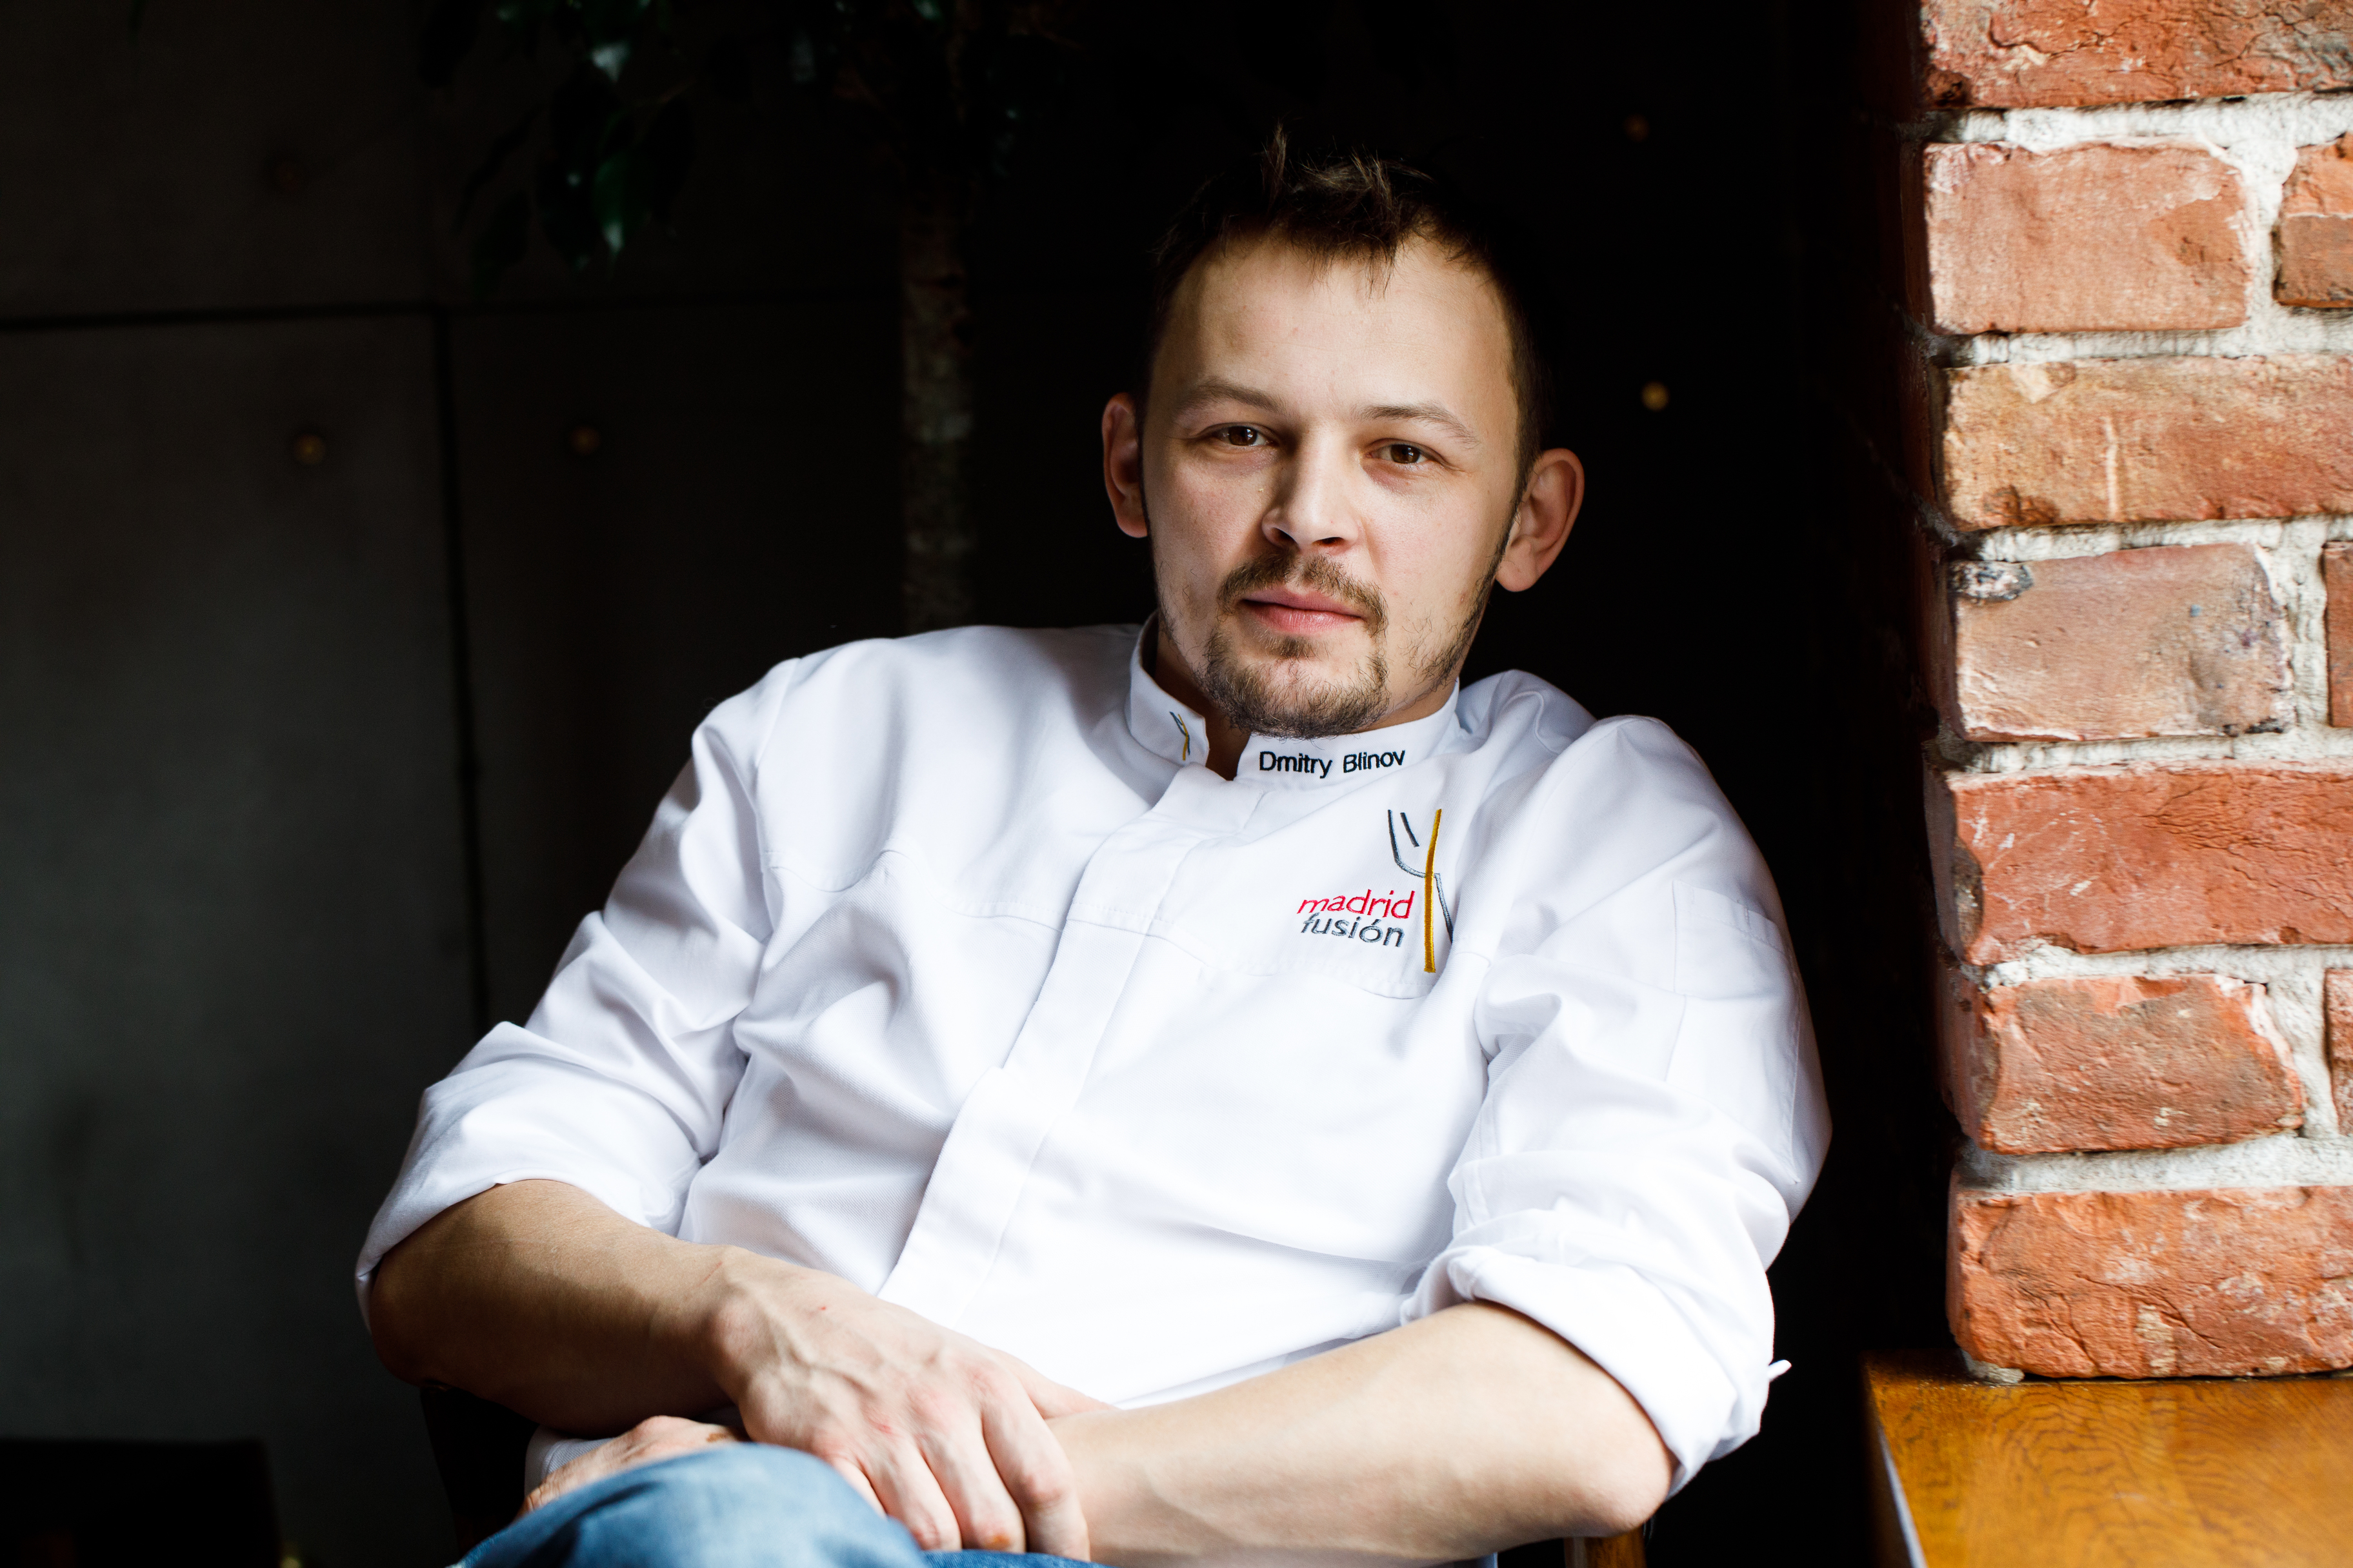 Дмитрий Блинов, ресторатор (Duo Gastrobar, Tartarbar, Duo Asia)